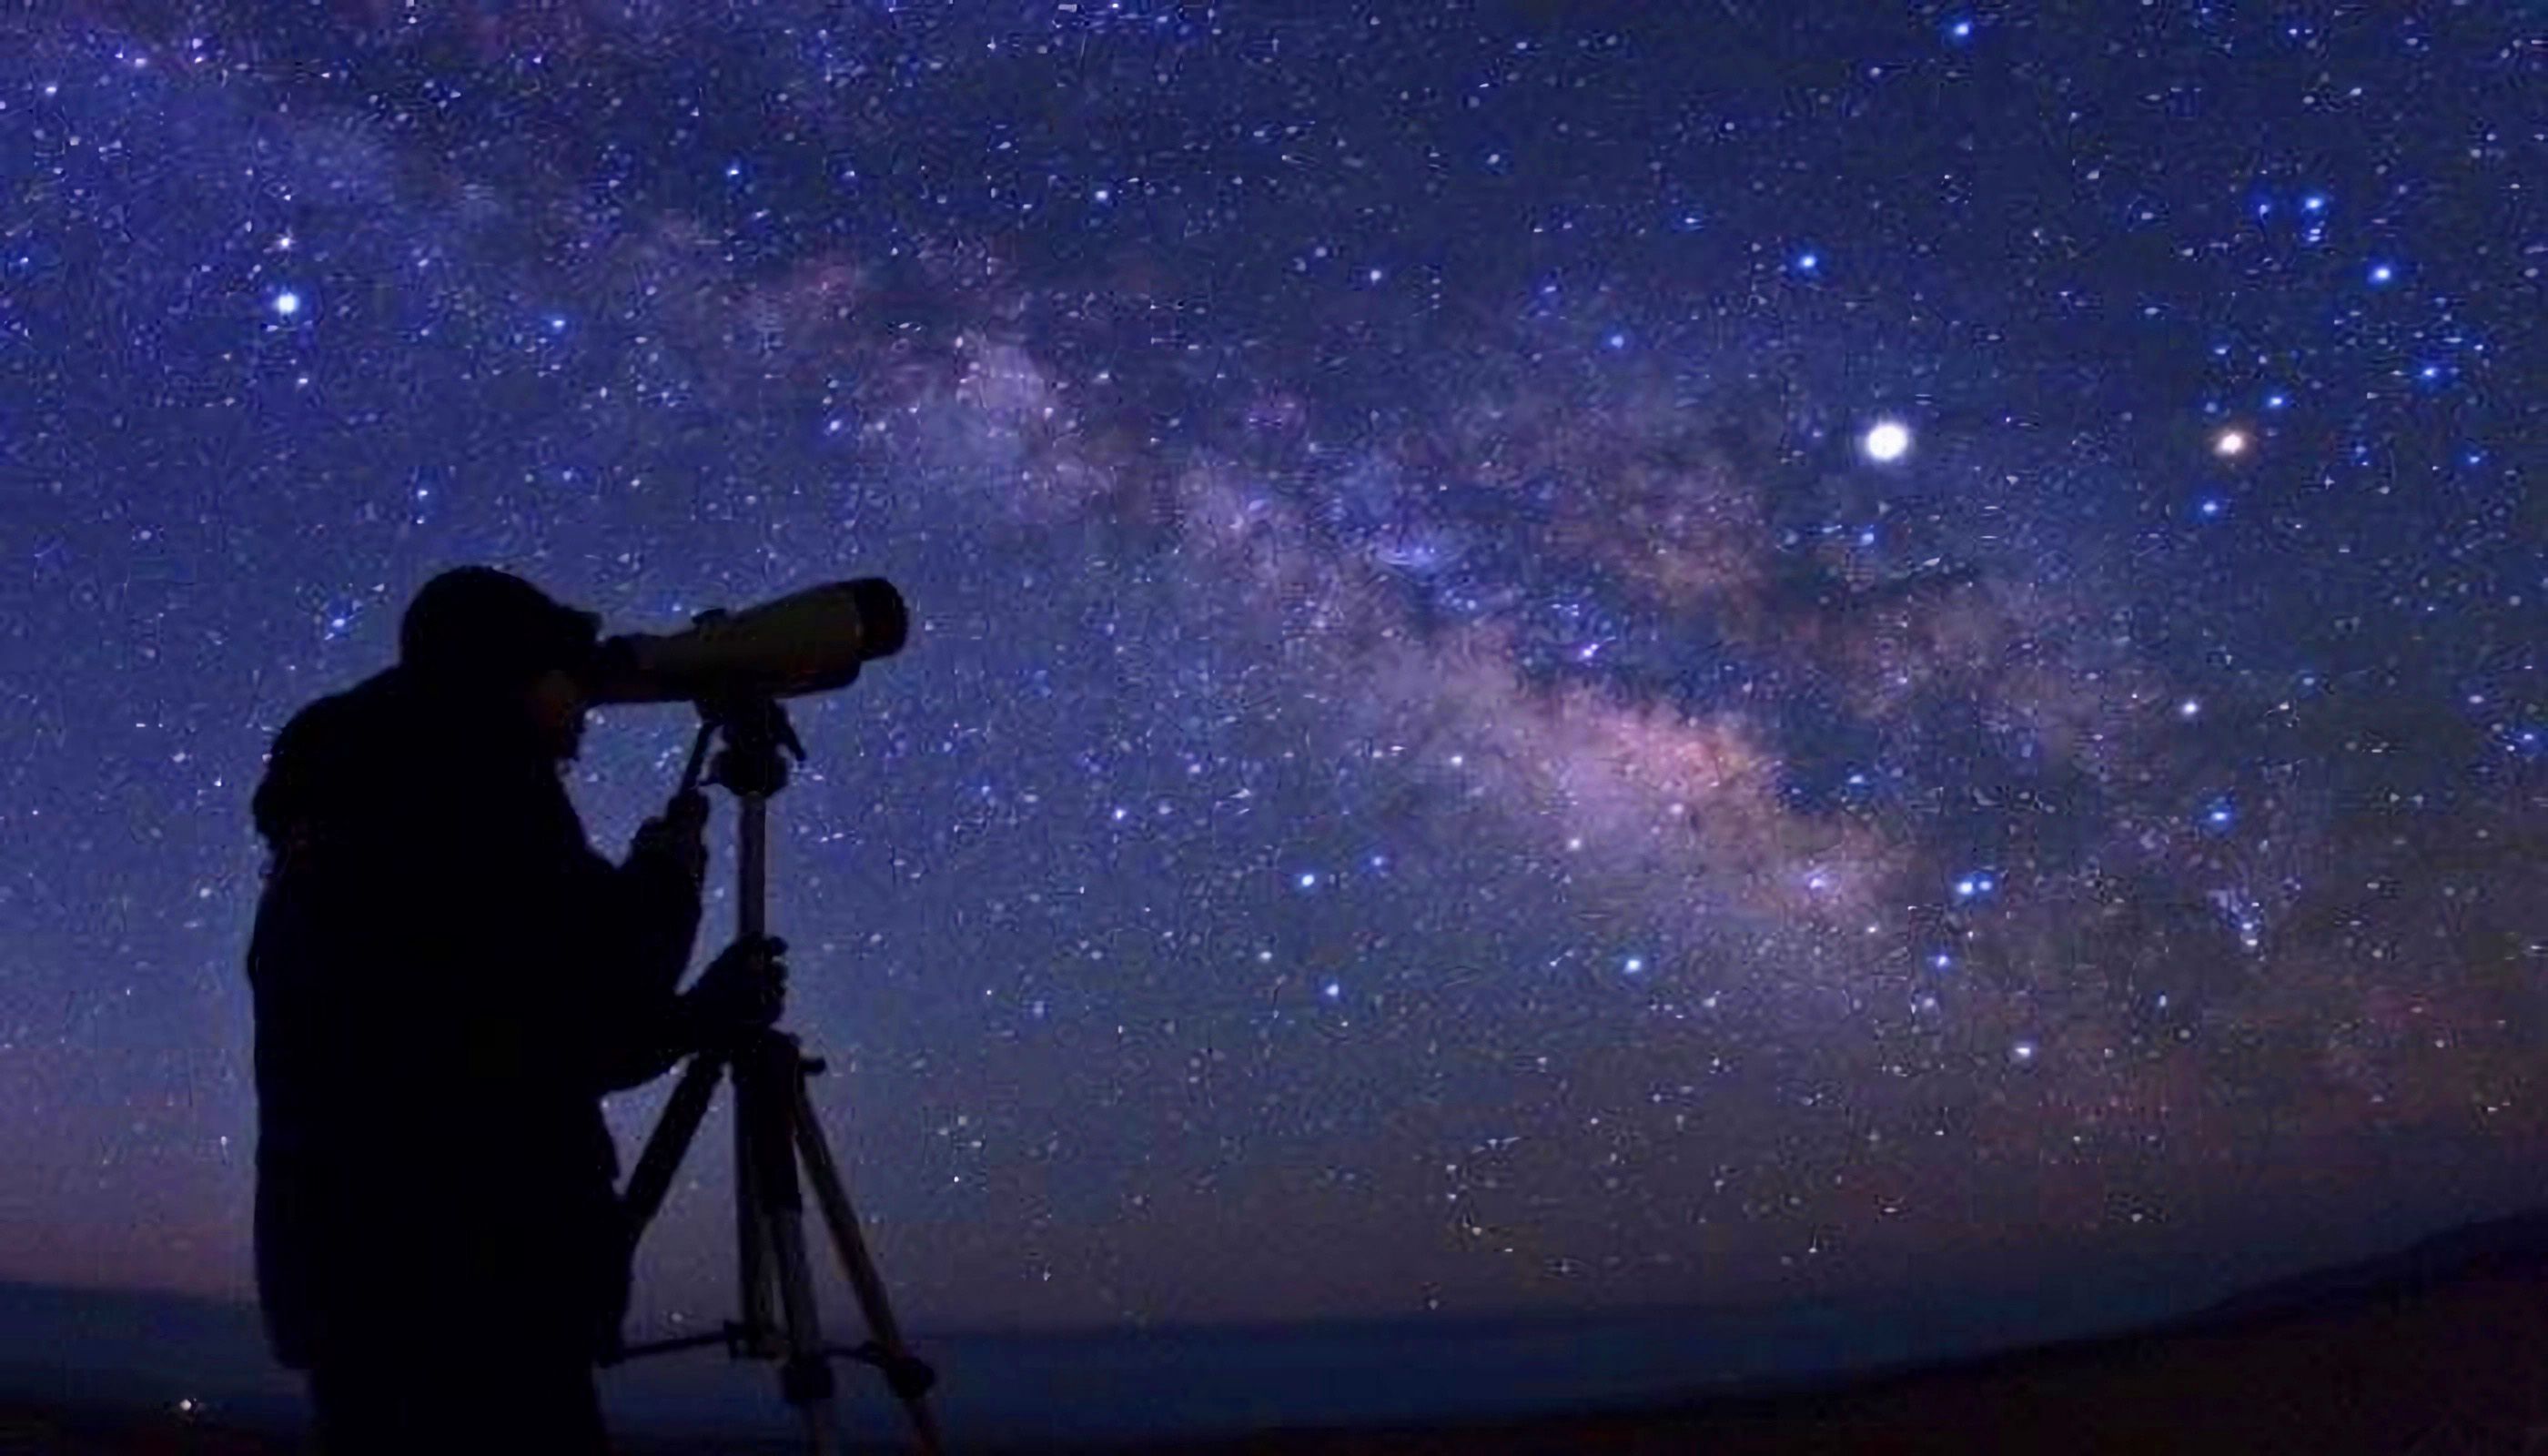 Звездное небо в телескоп. Osmondagi yulduzlar. Yulduzlar koinot. Телескоп. Наблюдение звездного неба.